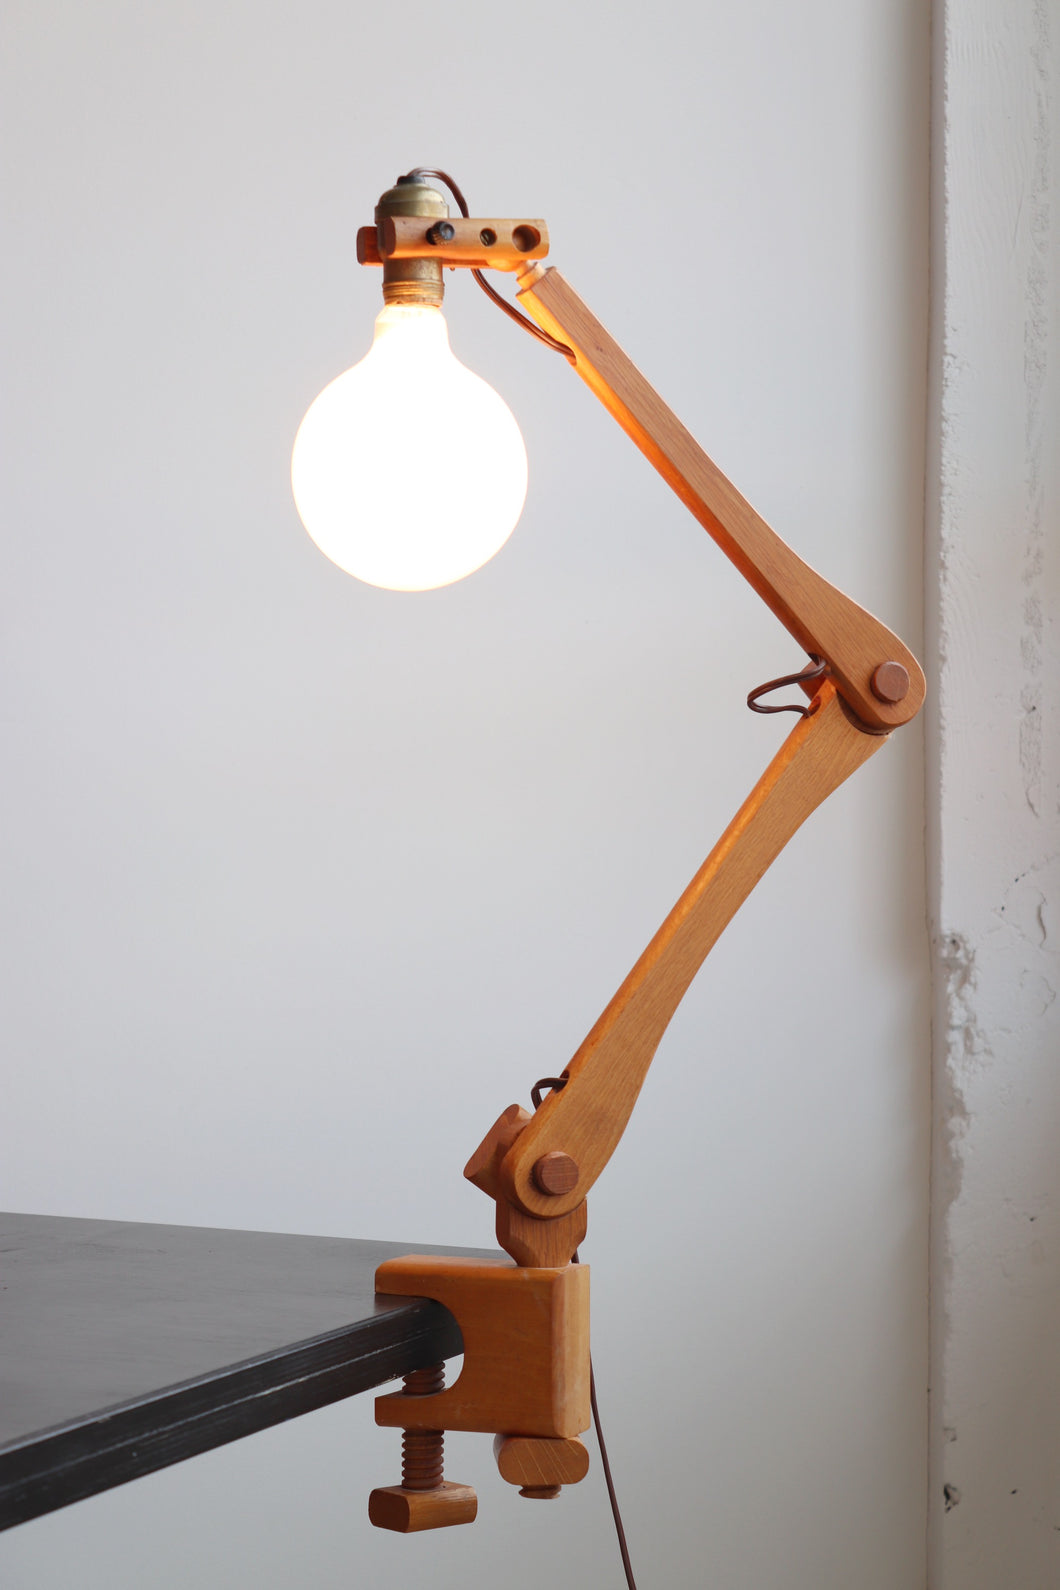 Articulating Wood Clamp Task Lamp